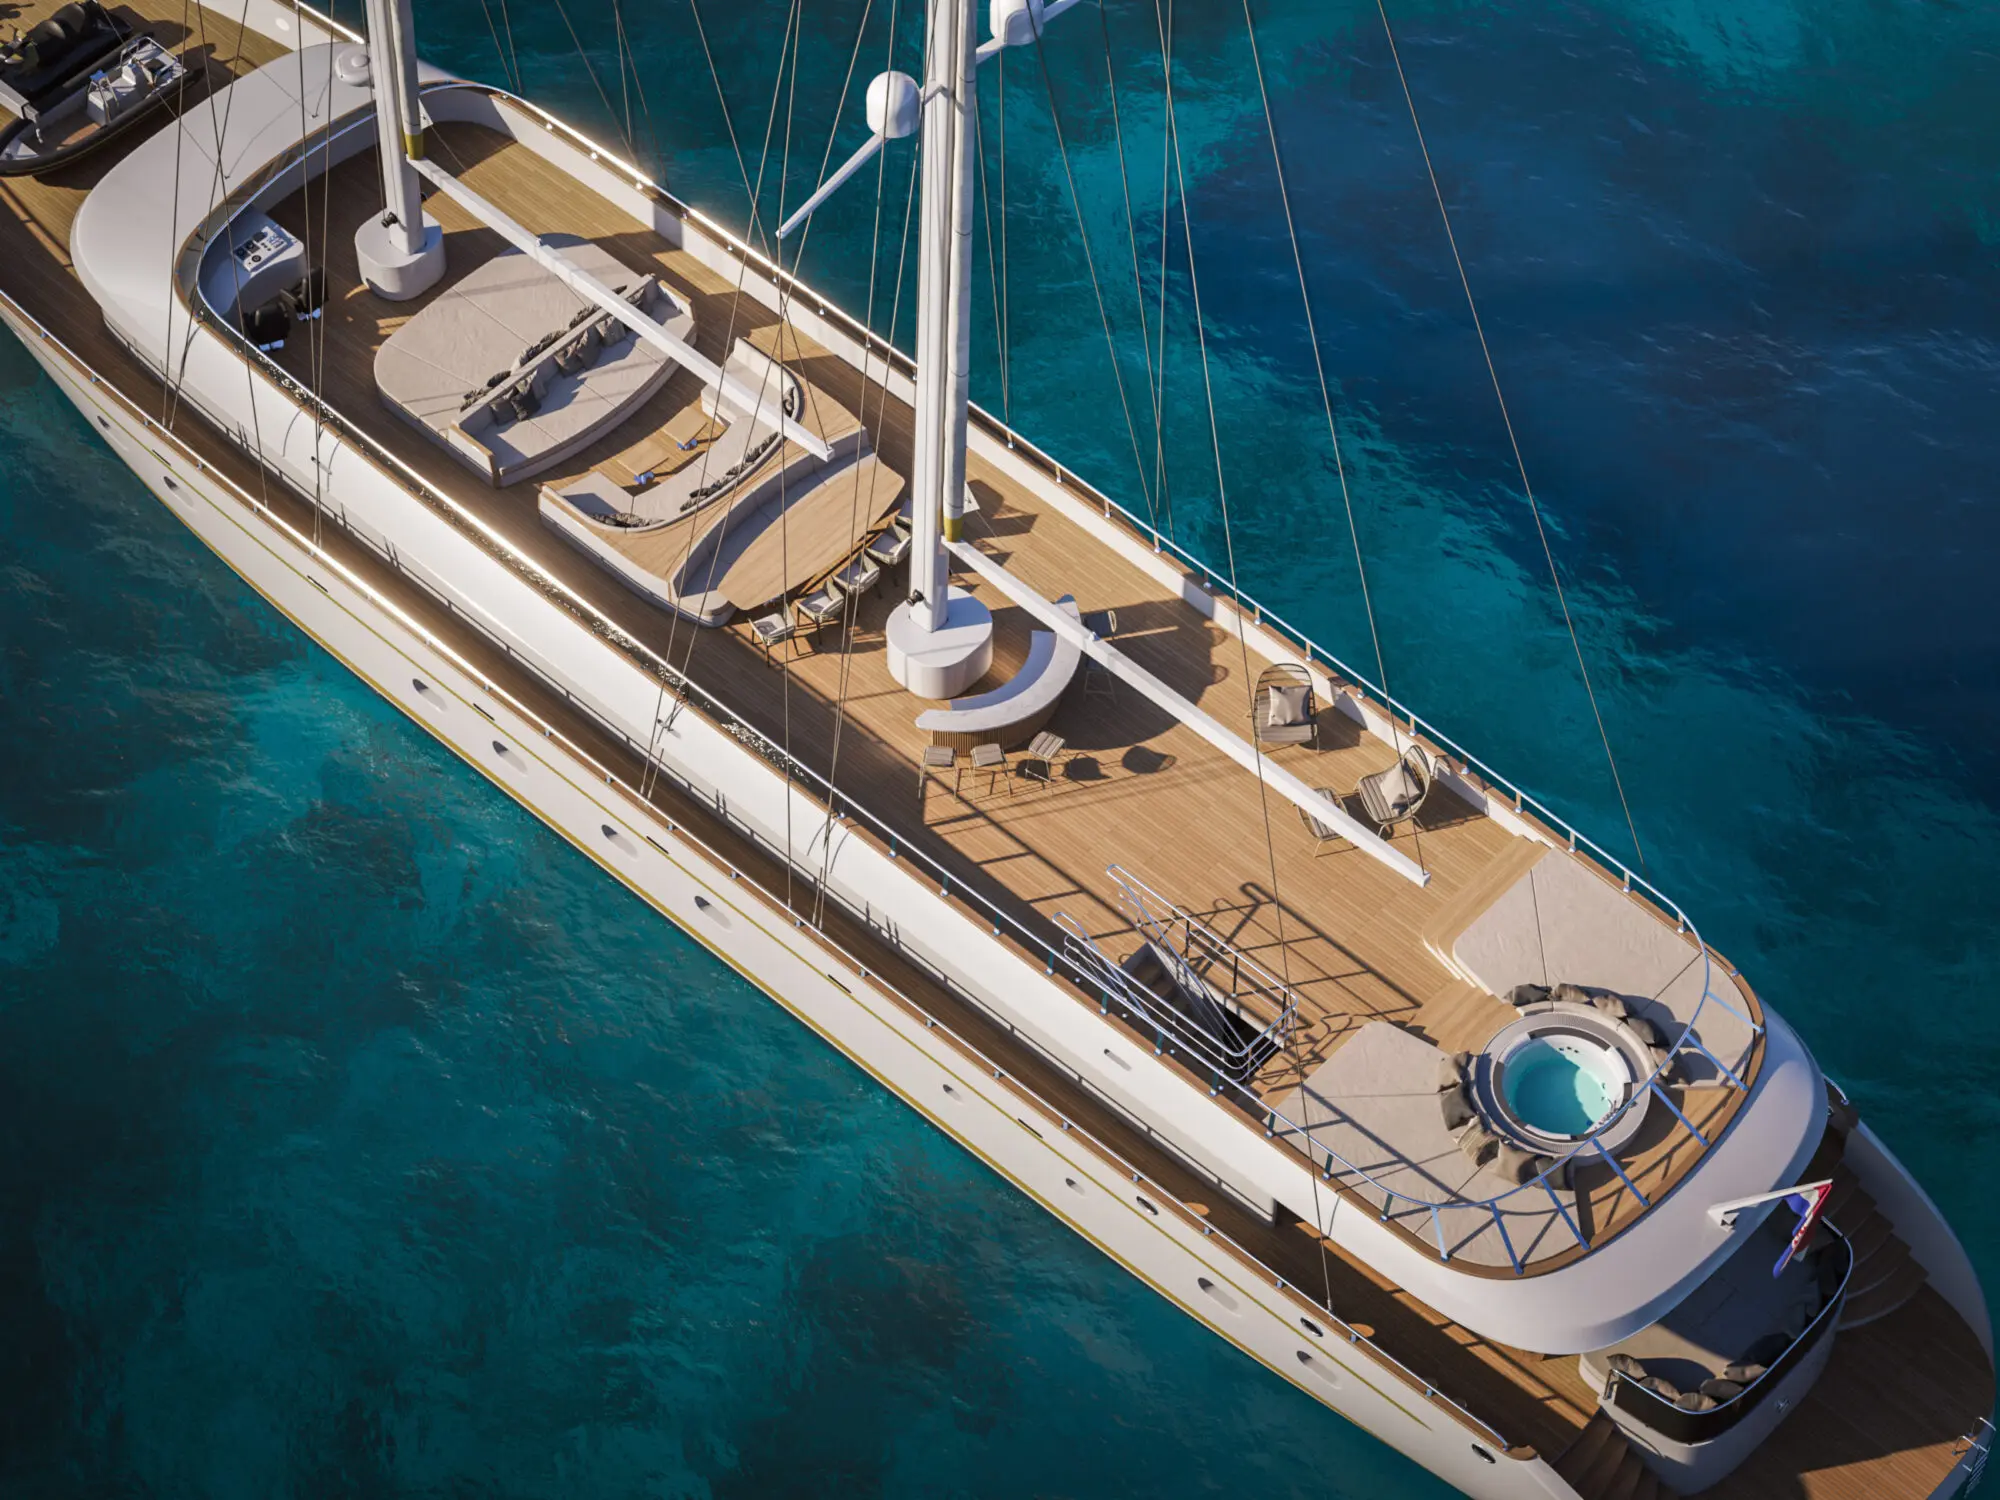 Anima Maris Yacht Charter Exterior